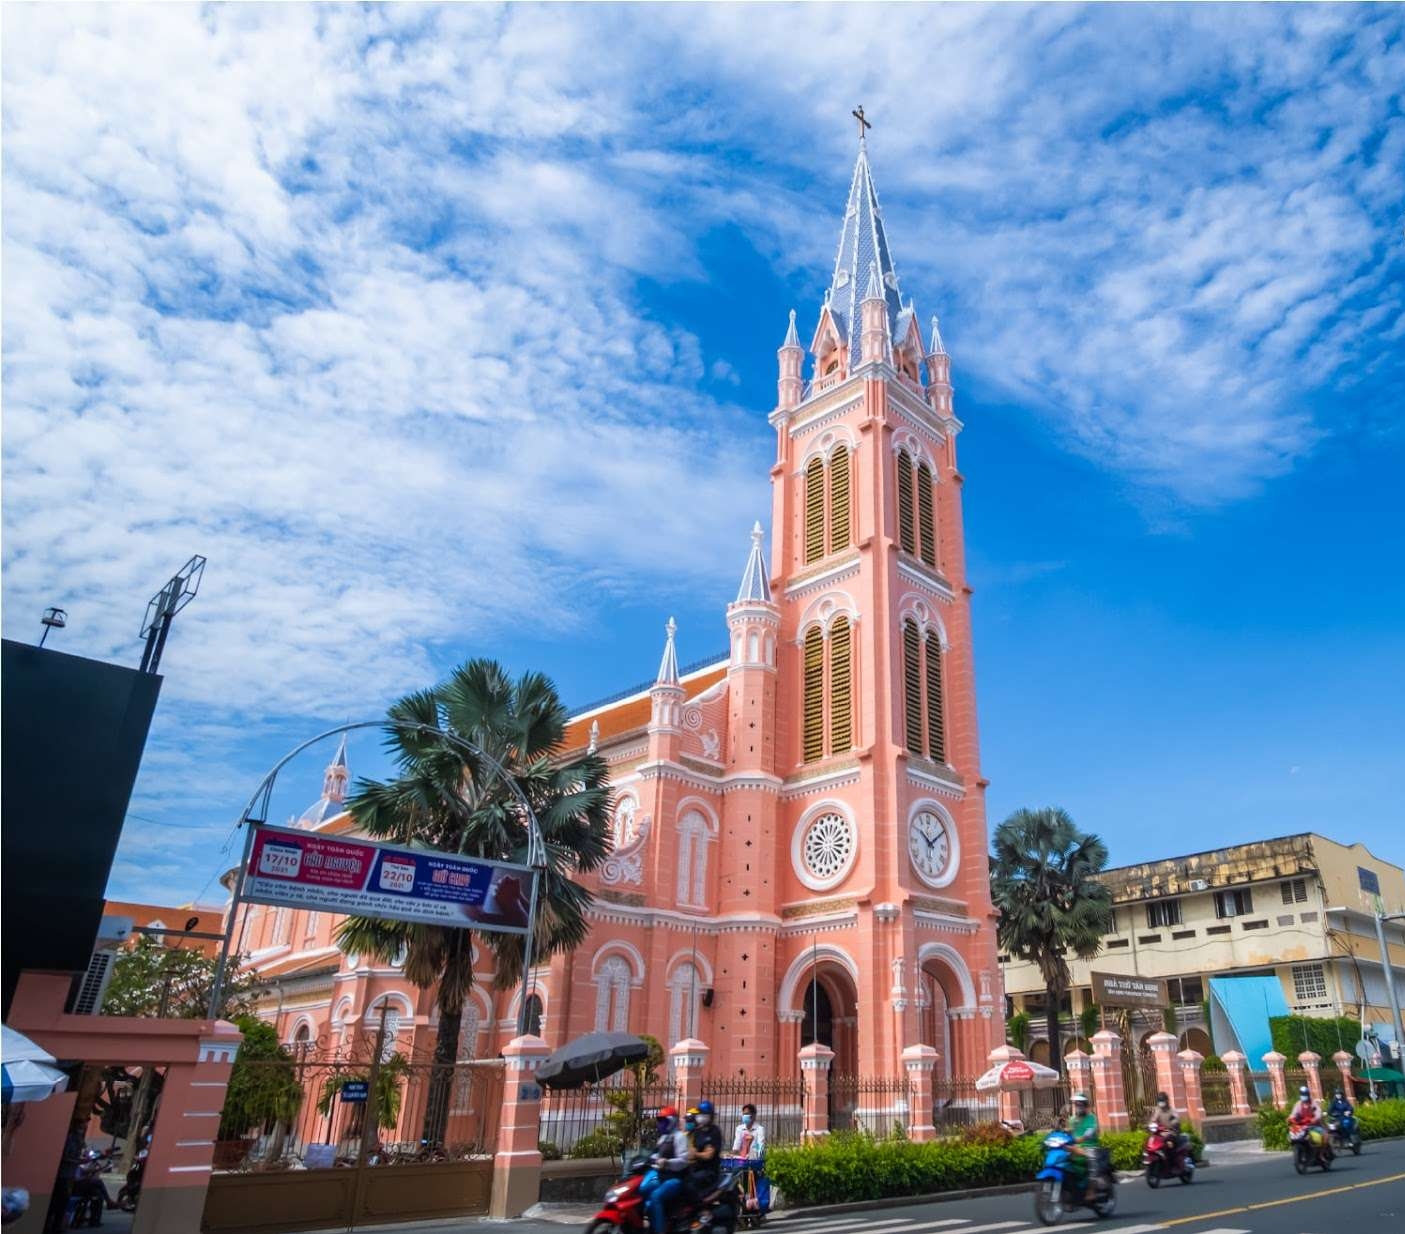  Nhà thờ Tân Định mang sắc hồng nhẹ nhàng, độc đáo